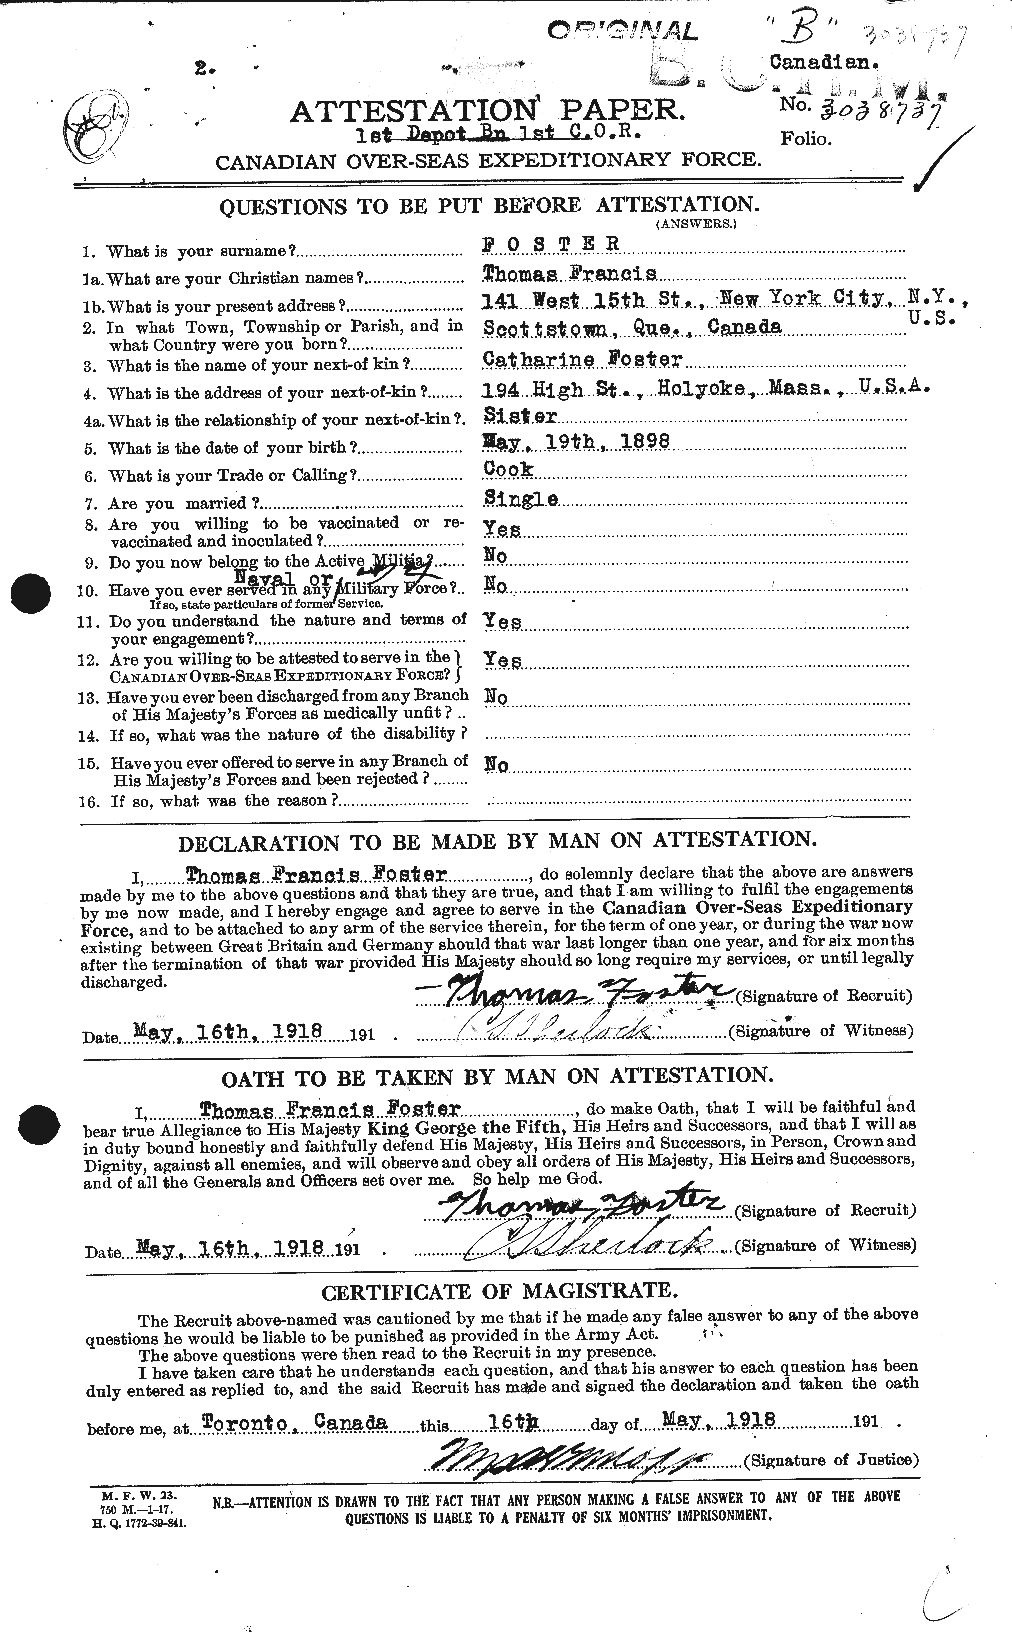 Dossiers du Personnel de la Première Guerre mondiale - CEC 335231a